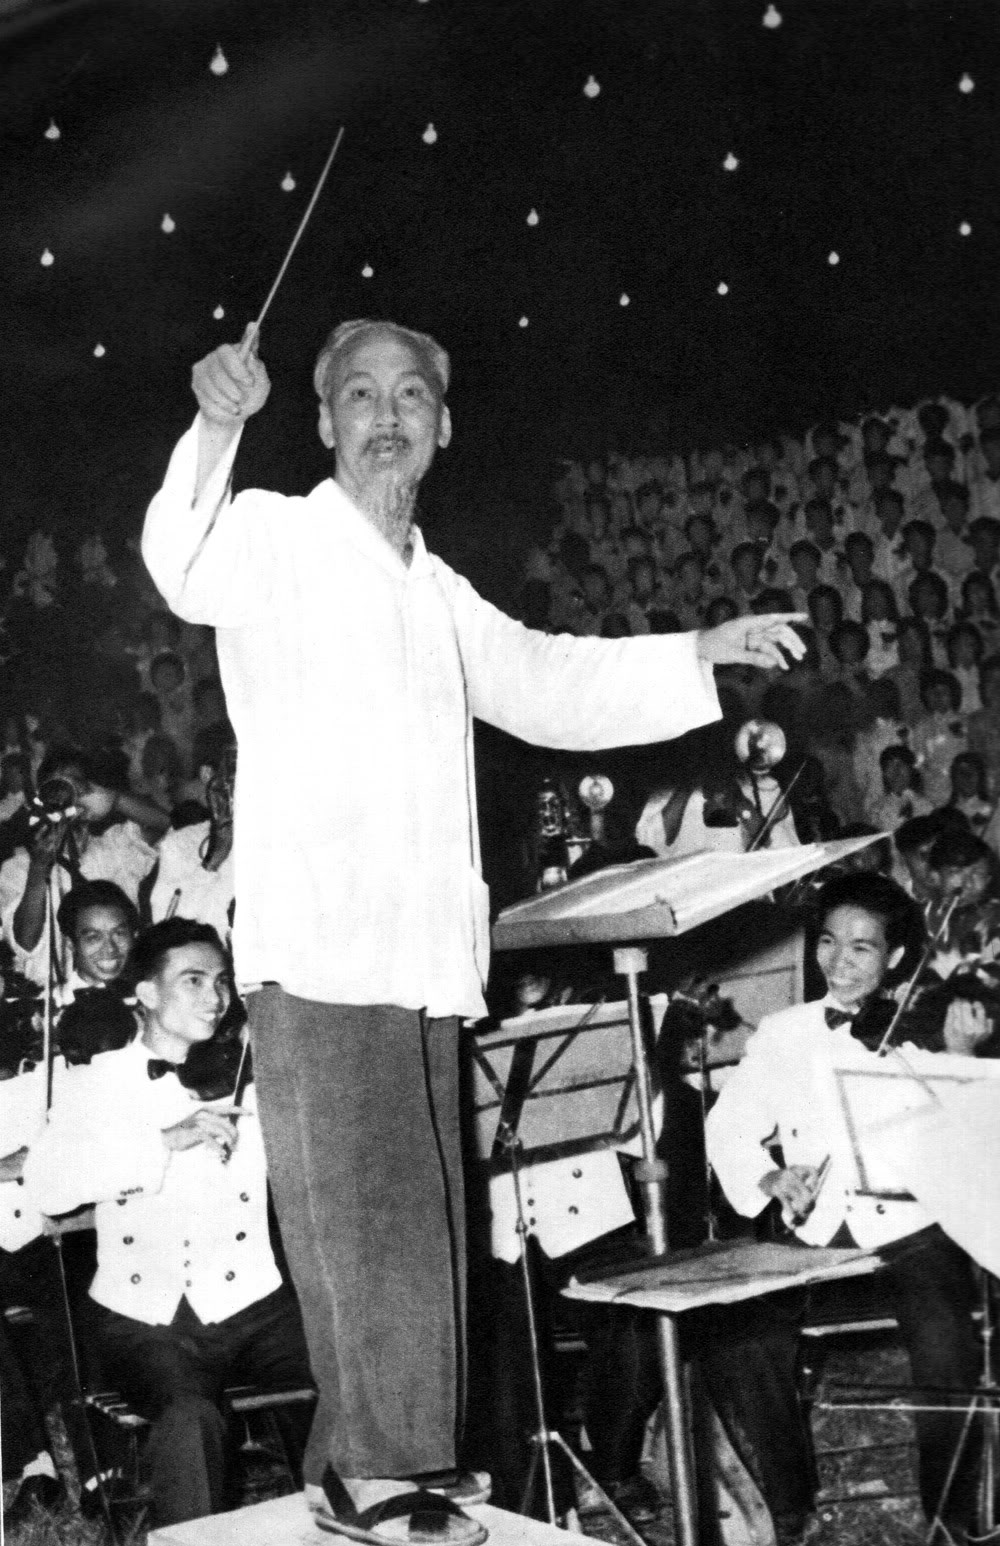 Ngắm nhìn lại những hình ảnh lịch sử xúc động về Chủ tịch Hồ Chí Minh - Ảnh 24